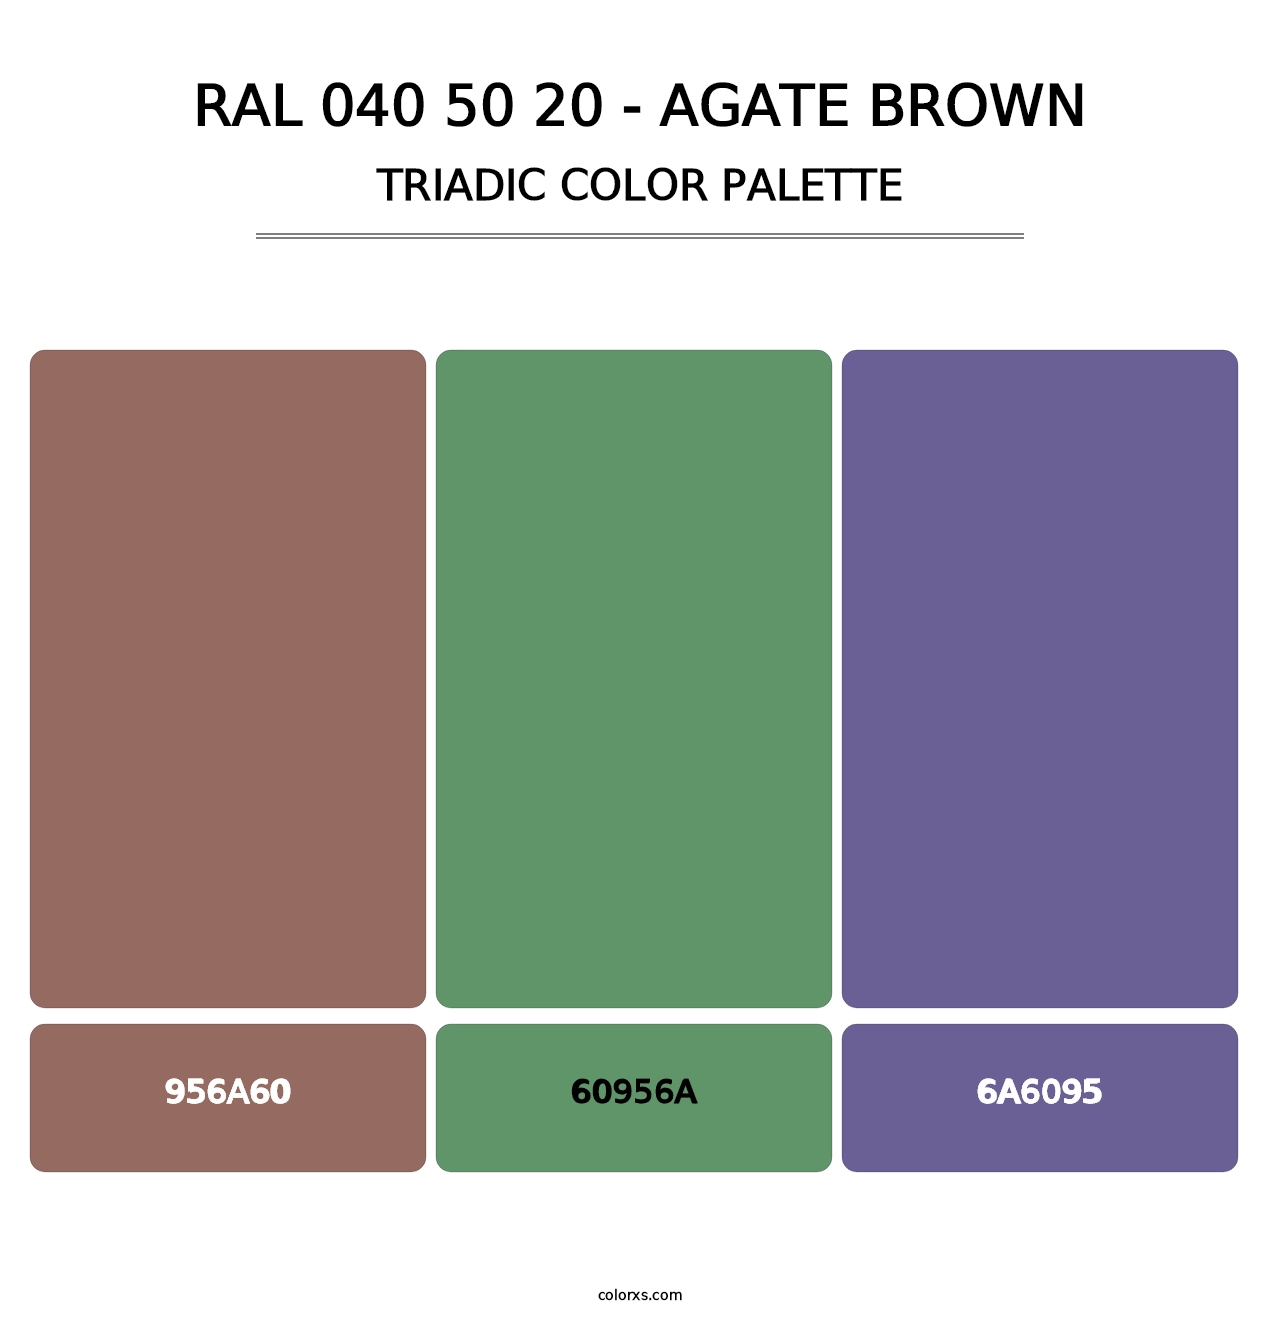 RAL 040 50 20 - Agate Brown - Triadic Color Palette